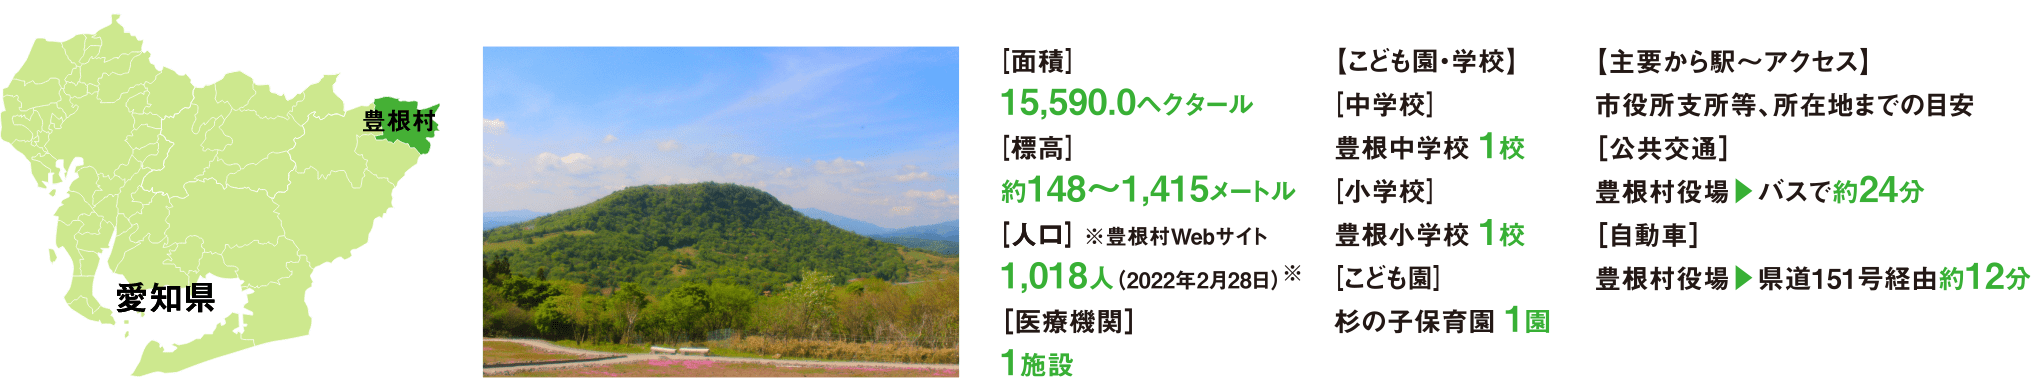 豊根村は、長野県と静岡県の県境に接し愛知県最高峰の茶臼山を有する村。山々と渓谷が織りなす自然豊かな地域です。